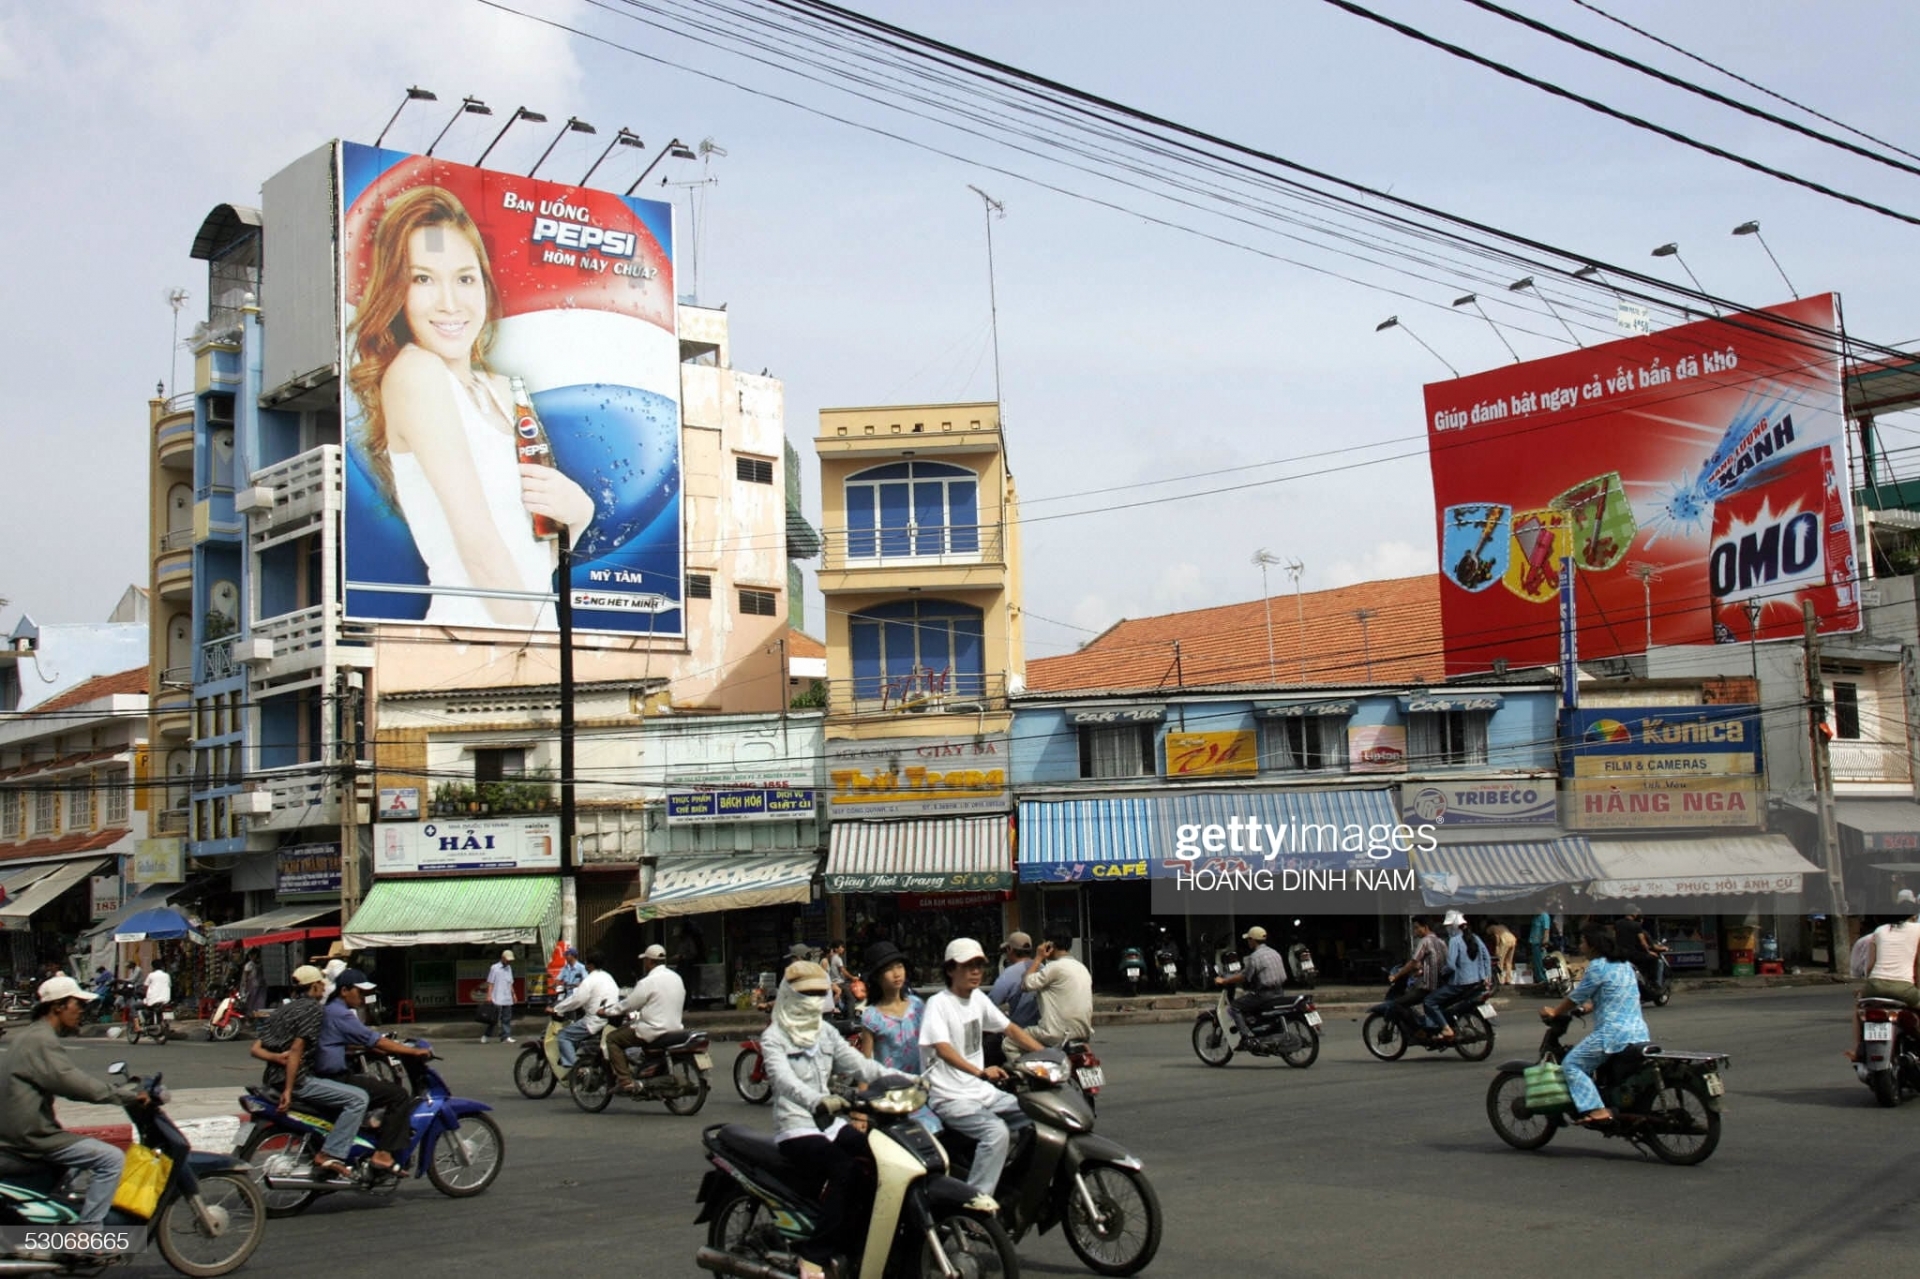 Một con đường tại Sài Gòn với những biển quảng cáo cỡ lớn, ảnh chụp vào ngày 15/6/2005.